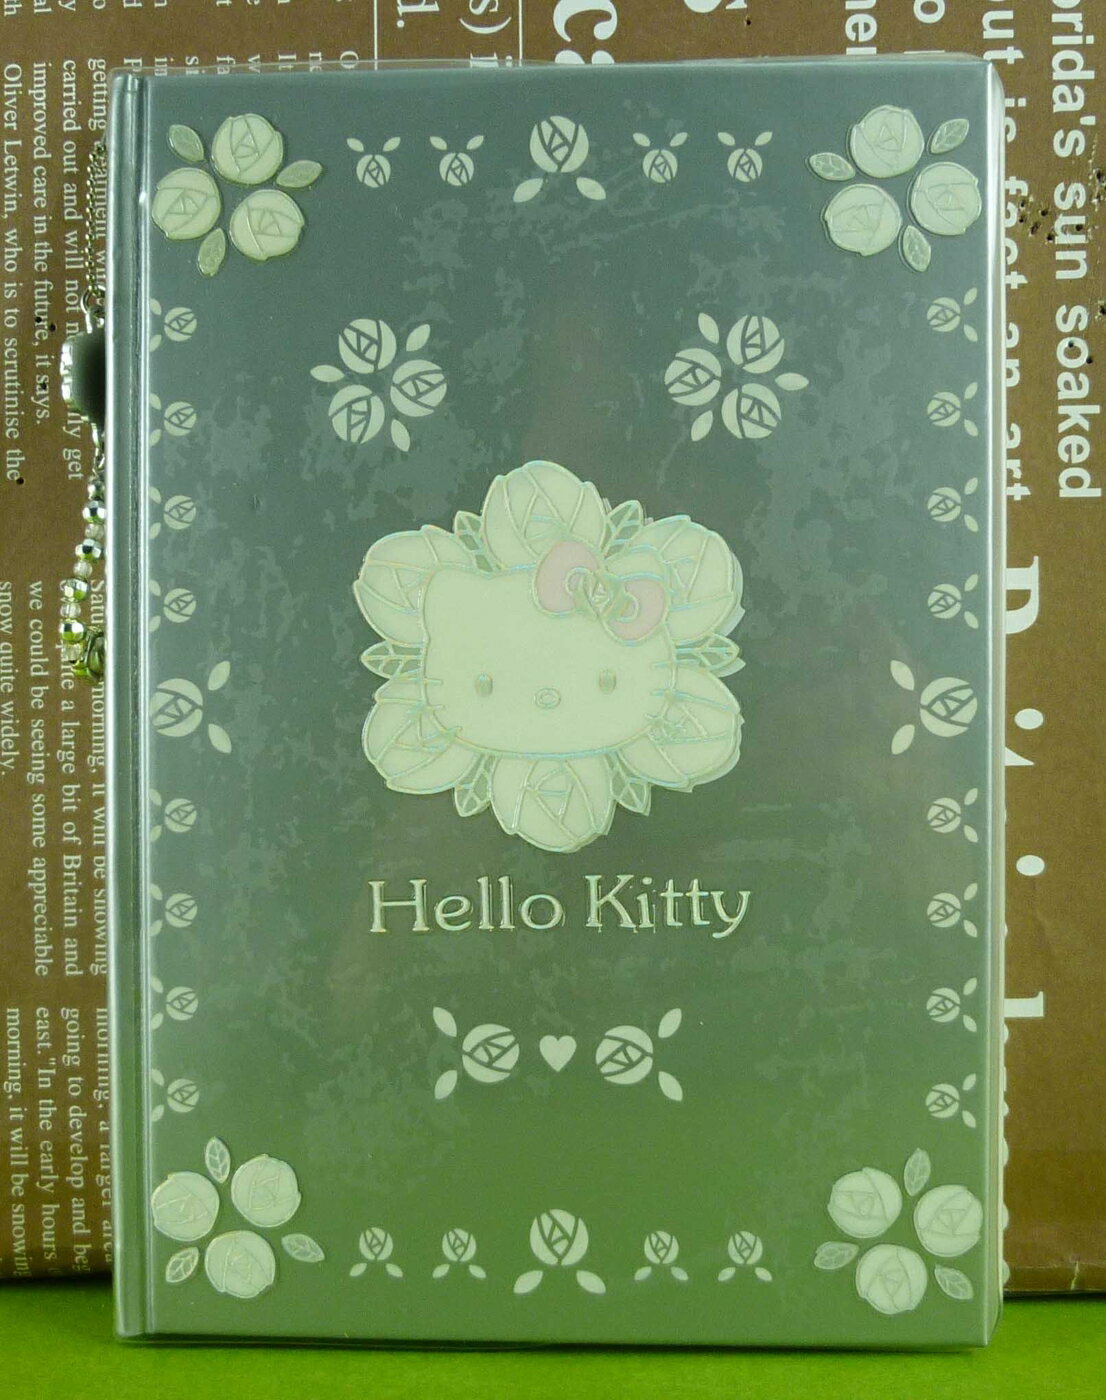 【震撼精品百貨】Hello Kitty 凱蒂貓 筆記本 蕾絲 銀色【共1款】 震撼日式精品百貨